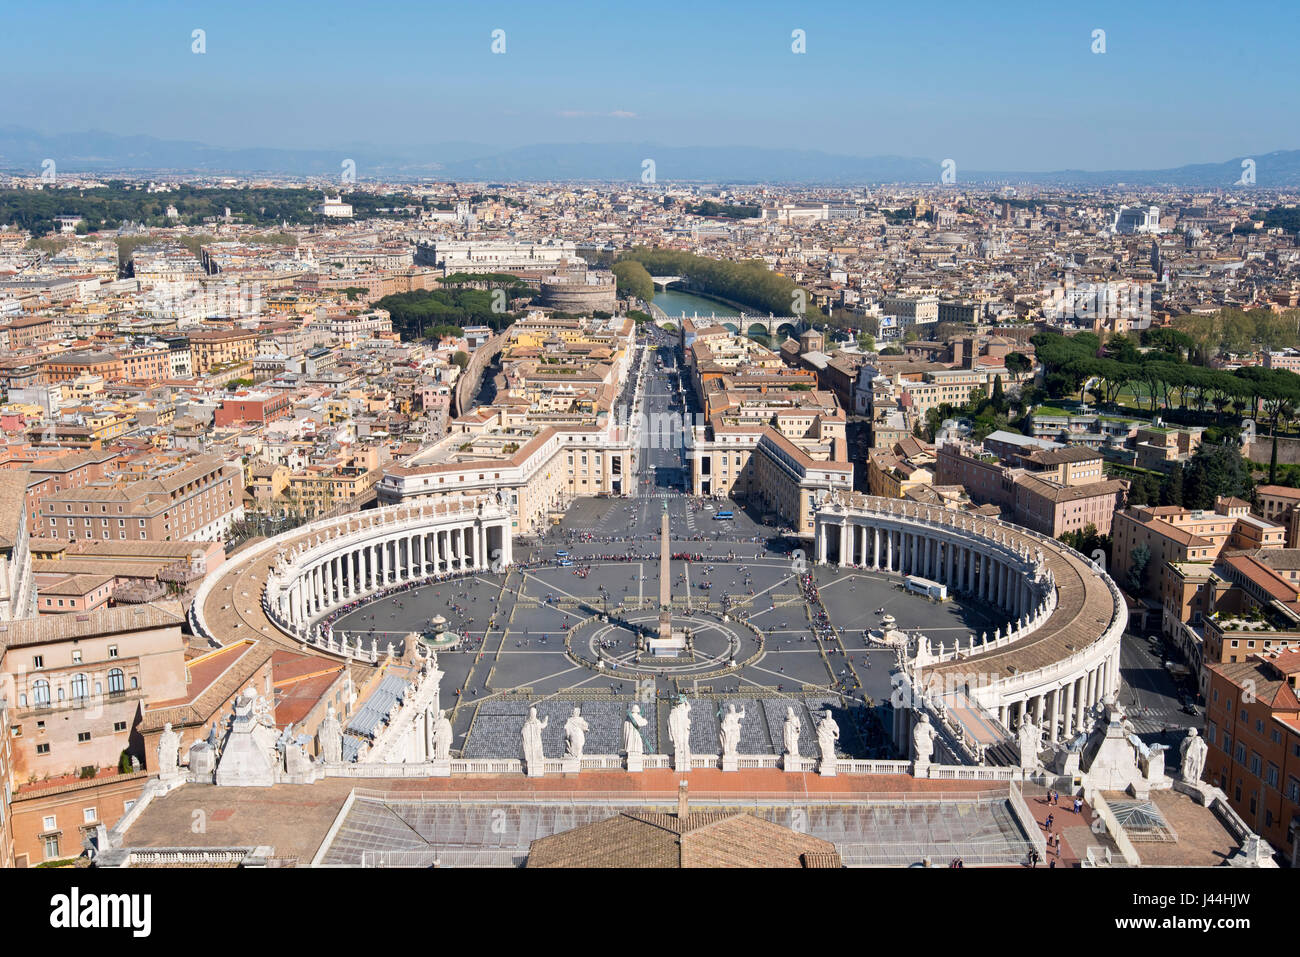 Ein Blick auf dem Petersplatz Piazza San Pietro vor Str. Peters Basilica und Stadtbild über Rom an einem sonnigen Tag mit blauem Himmel. Stockfoto